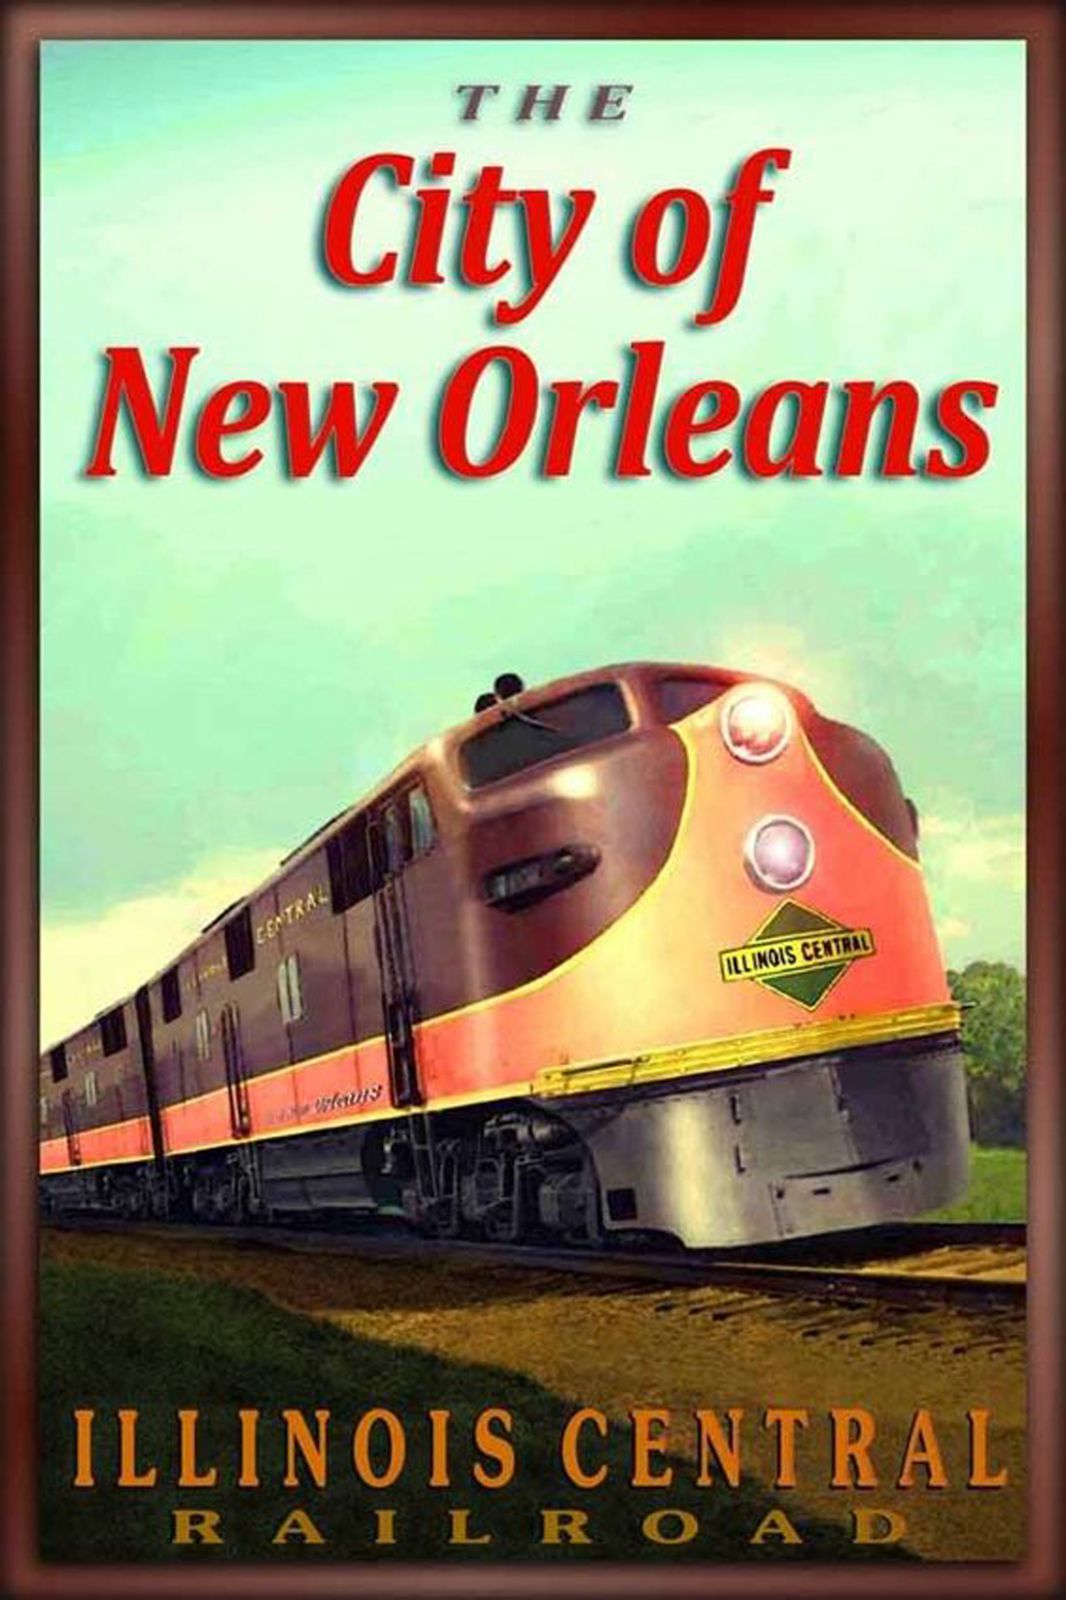 Ancienne affiche publicitaire de la compagnie américaine Illinois Central Railroad pour son train vedette "The City of New Orleans" qui reliait Chicago et la Nouvelle Orléans.